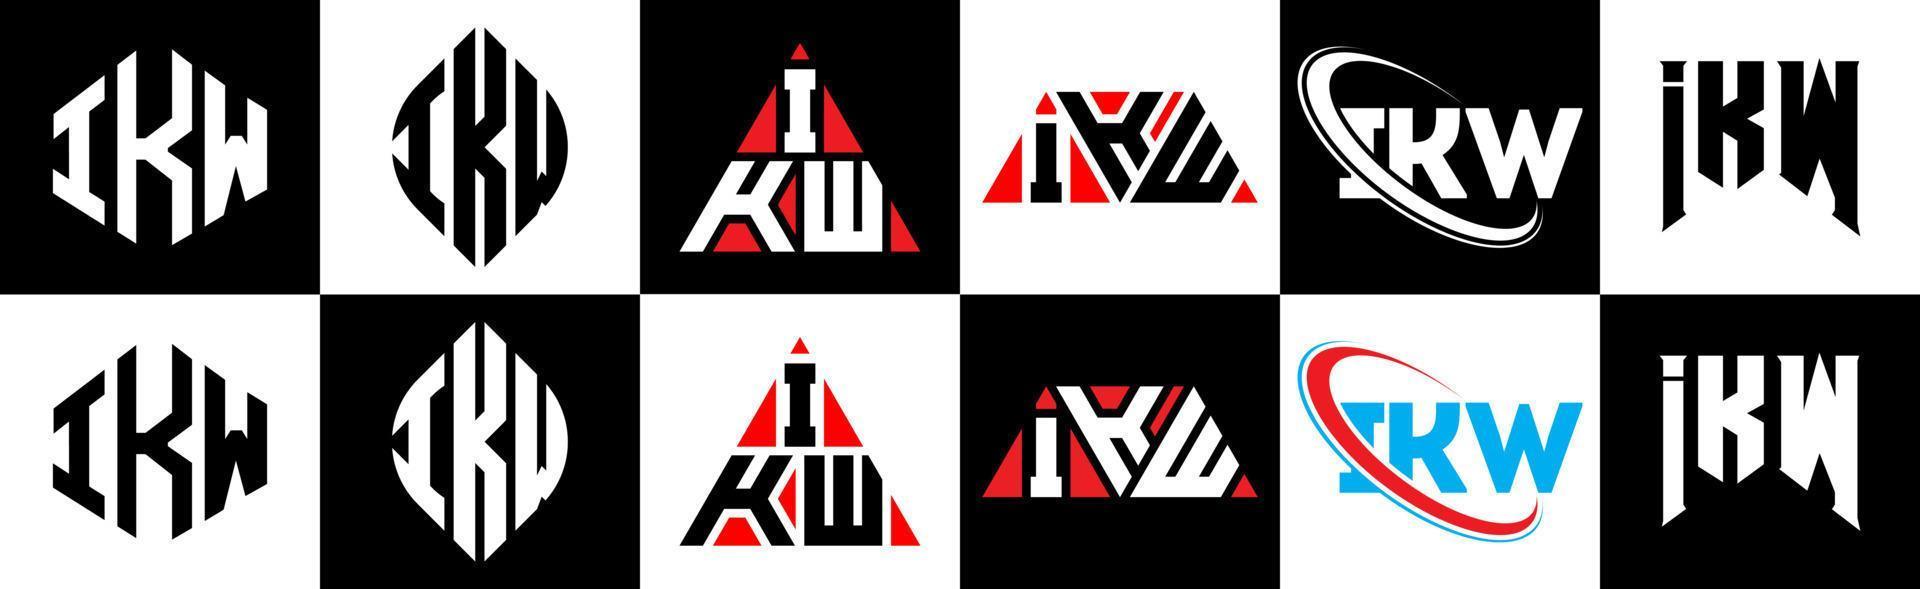 Ikw-Buchstaben-Logo-Design in sechs Stilen. ikw polygon, kreis, dreieck, sechseck, flacher und einfacher stil mit schwarz-weißem buchstabenlogo in einer zeichenfläche. ikw minimalistisches und klassisches Logo vektor